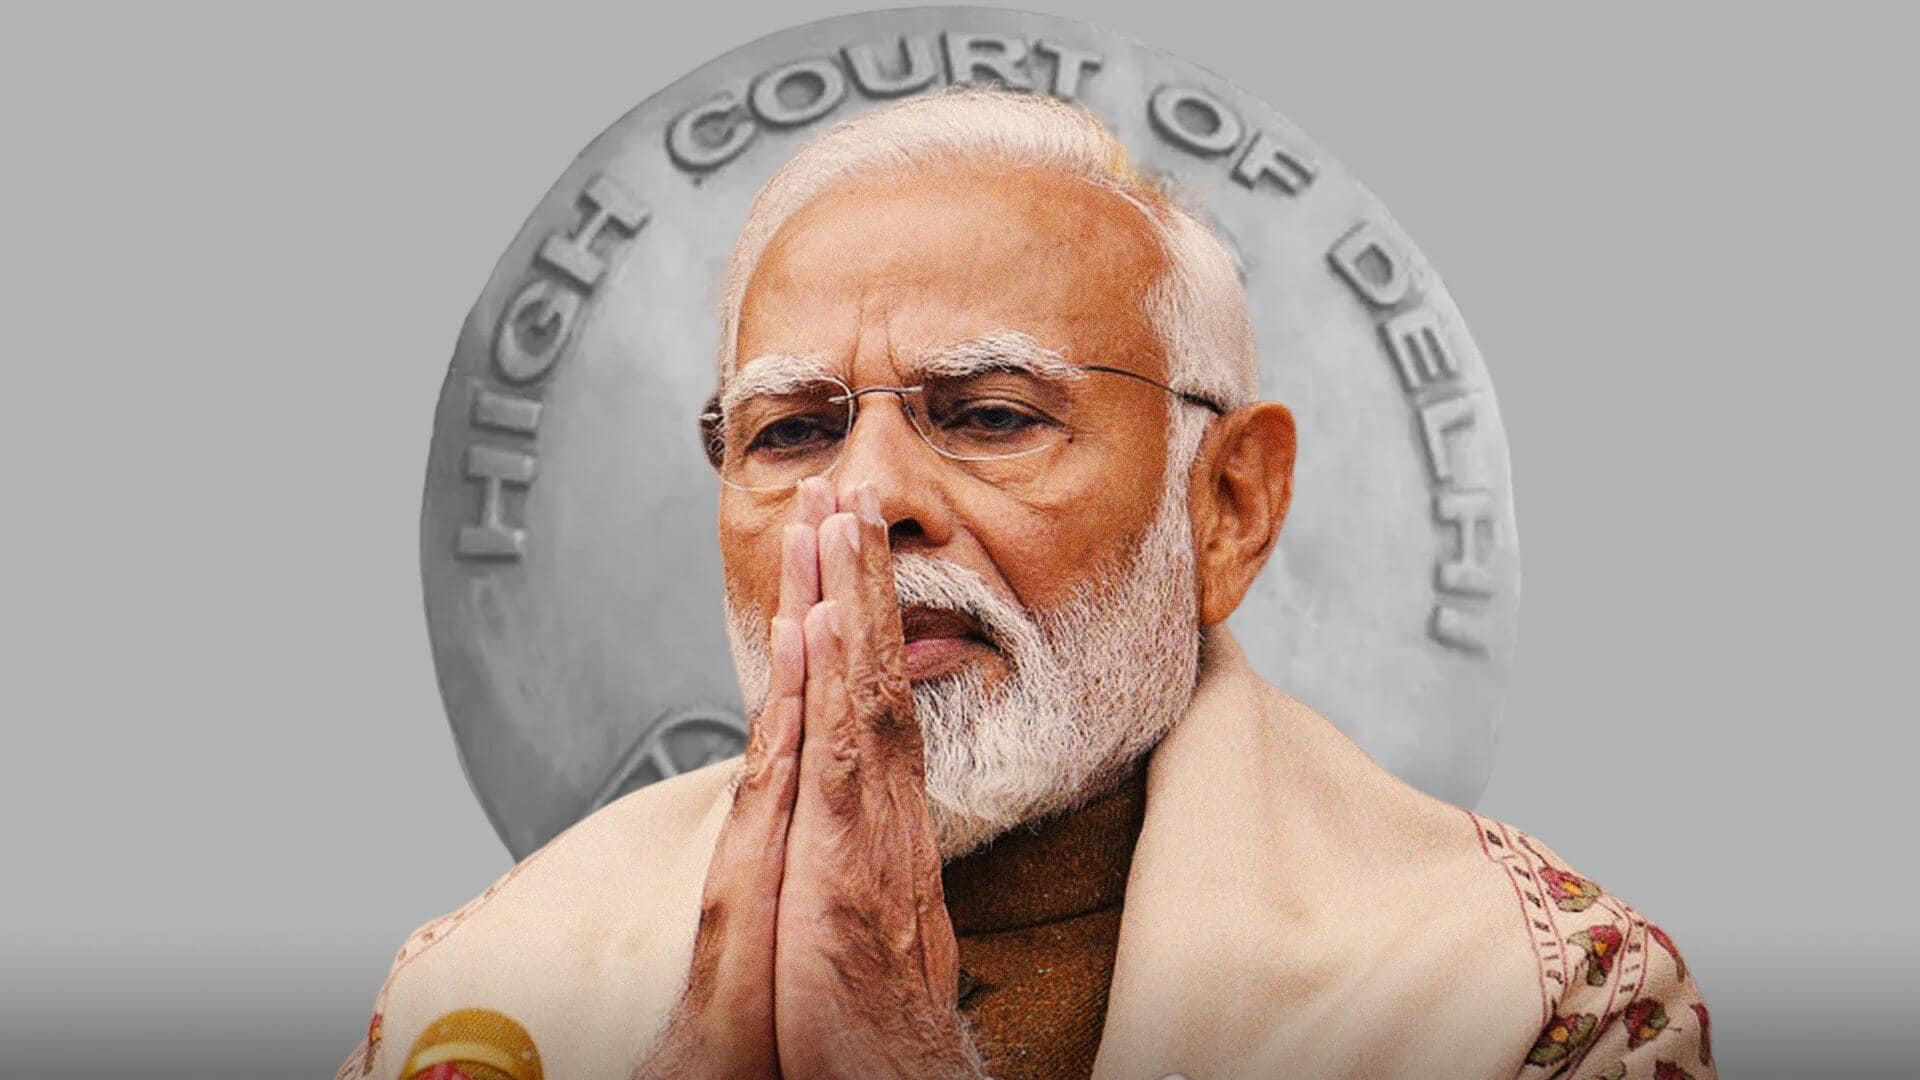 प्रधानमंत्री के खिलाफ साजिश देशद्रोह, गैर-जिम्मेदाराना तरीके से नहीं लगाया जा सकता आरोप- दिल्ली हाई कोर्ट